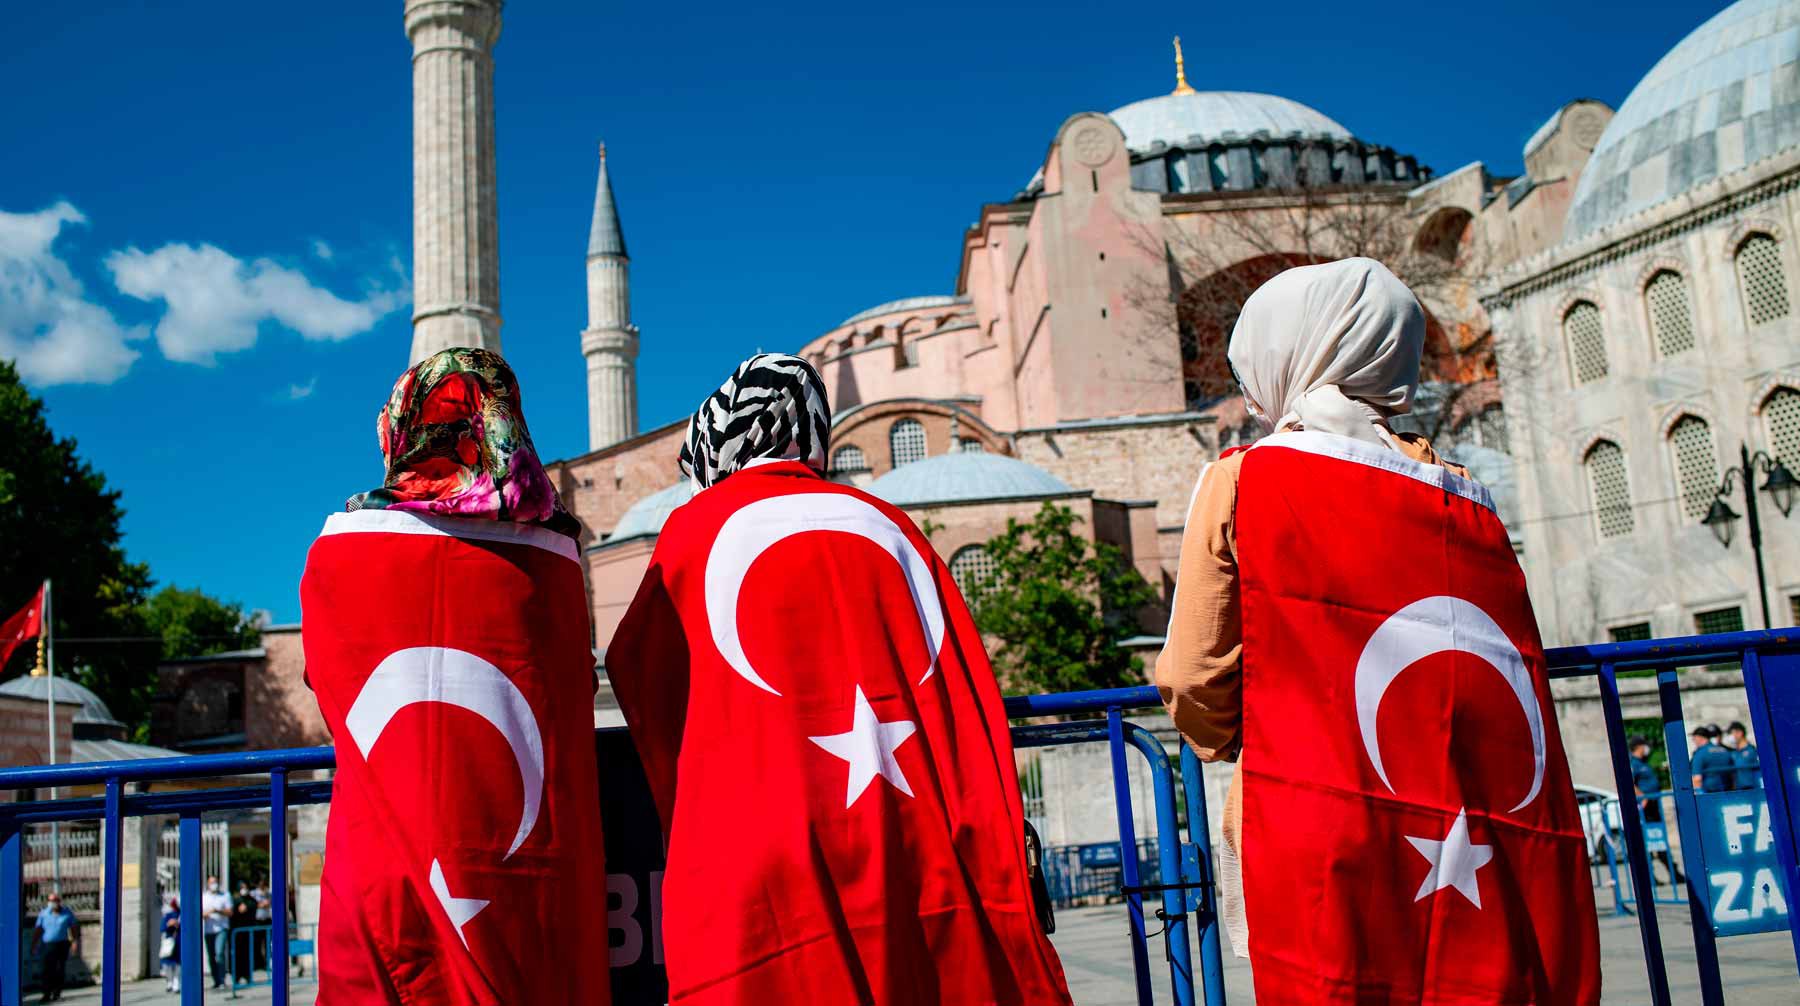 турецкий флаг фото